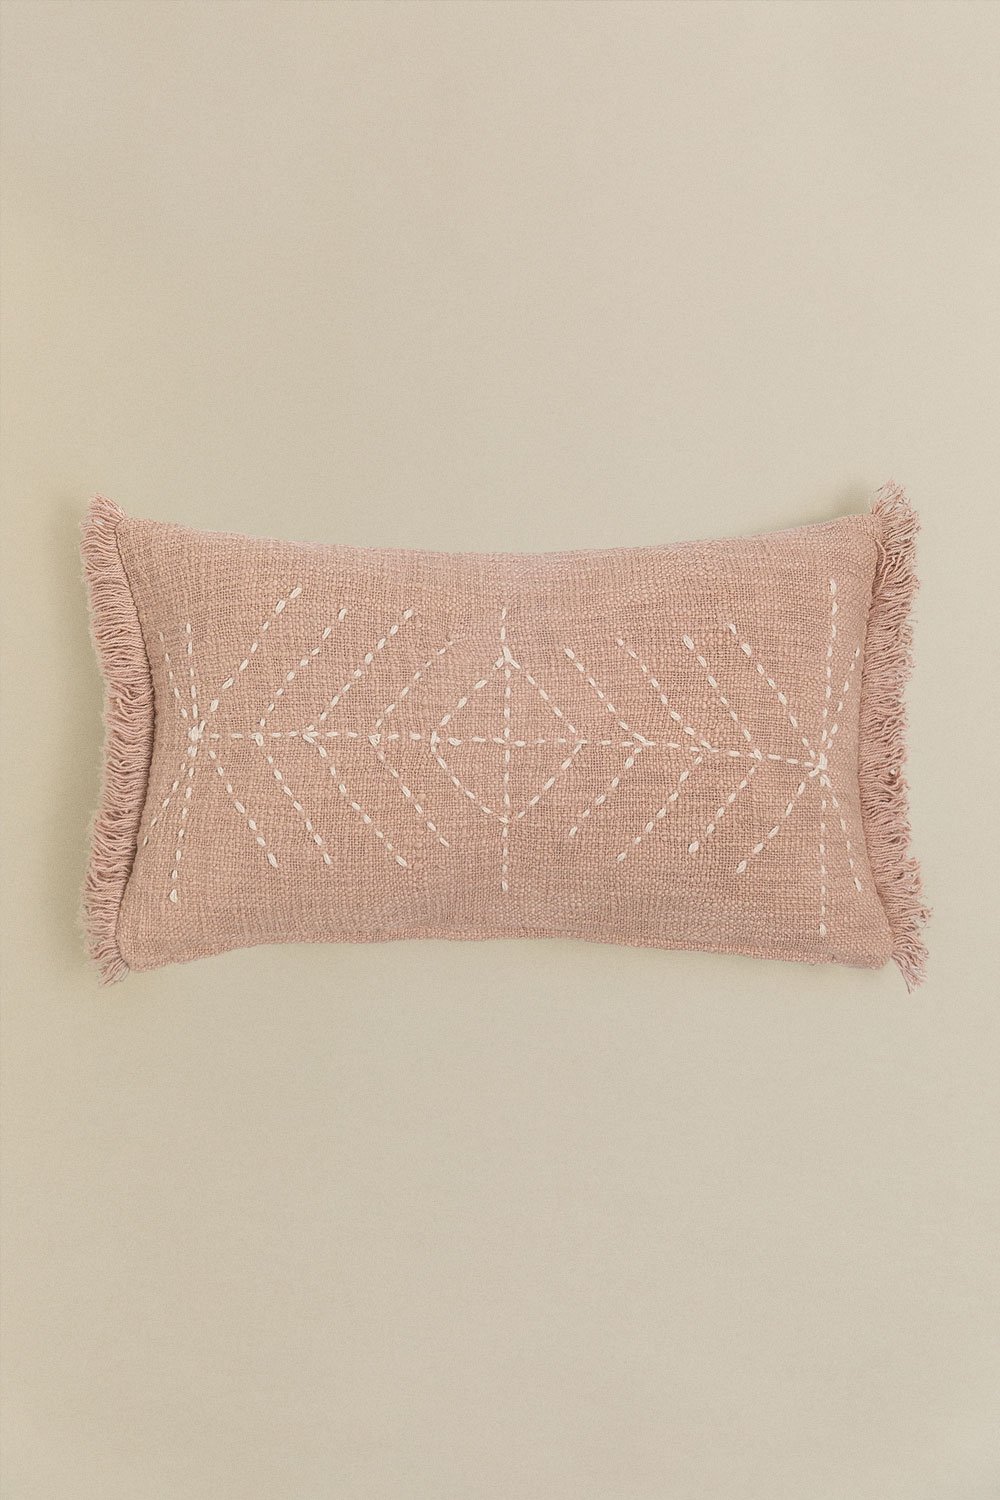 Cuscino rettangolare in cotone (30x50 cm) Ceara, immagine della galleria 1